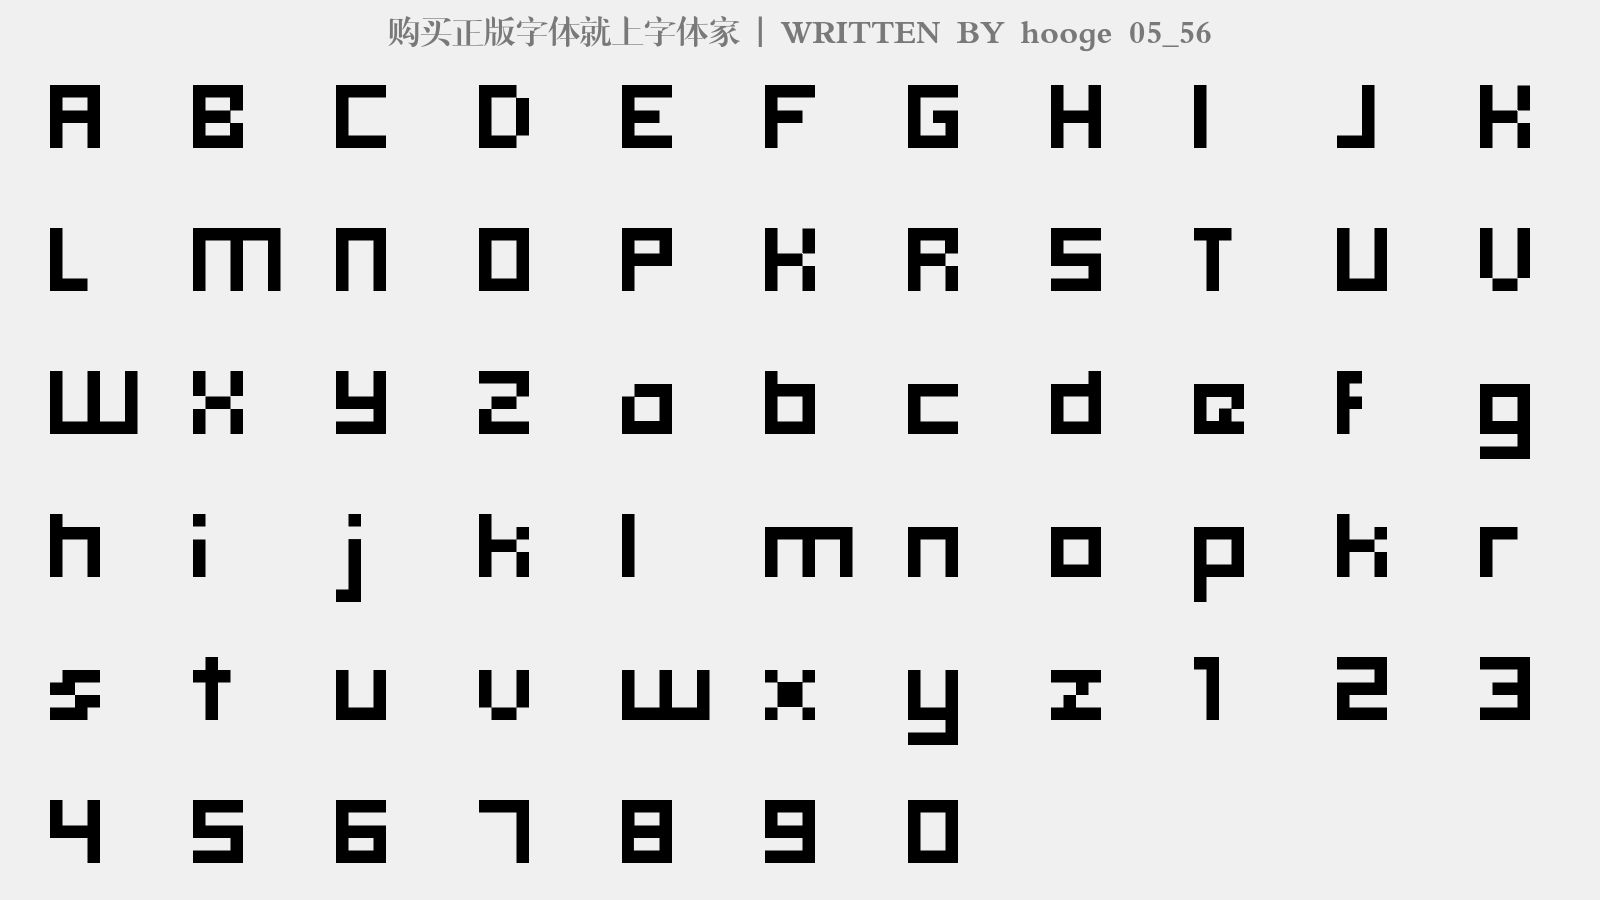 hooge 05_56 - 大写字母/小写字母/数字